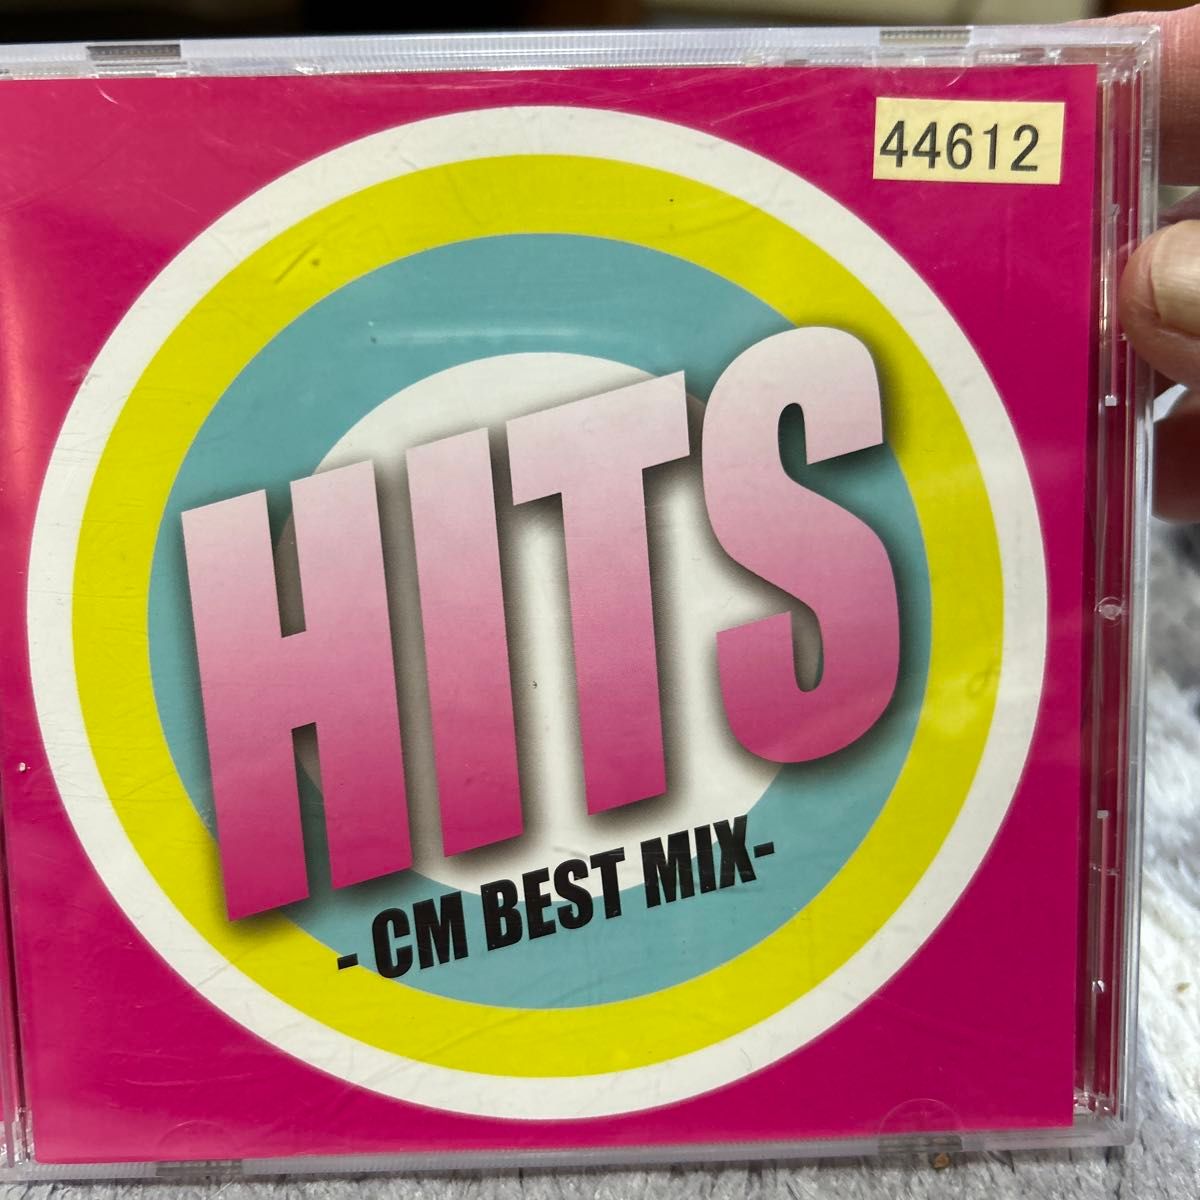 【CDまとめ売り】J-POP オムニバス カバーMIX /15年150曲 J-POP 50Hit など4枚set 中古CD まとめ